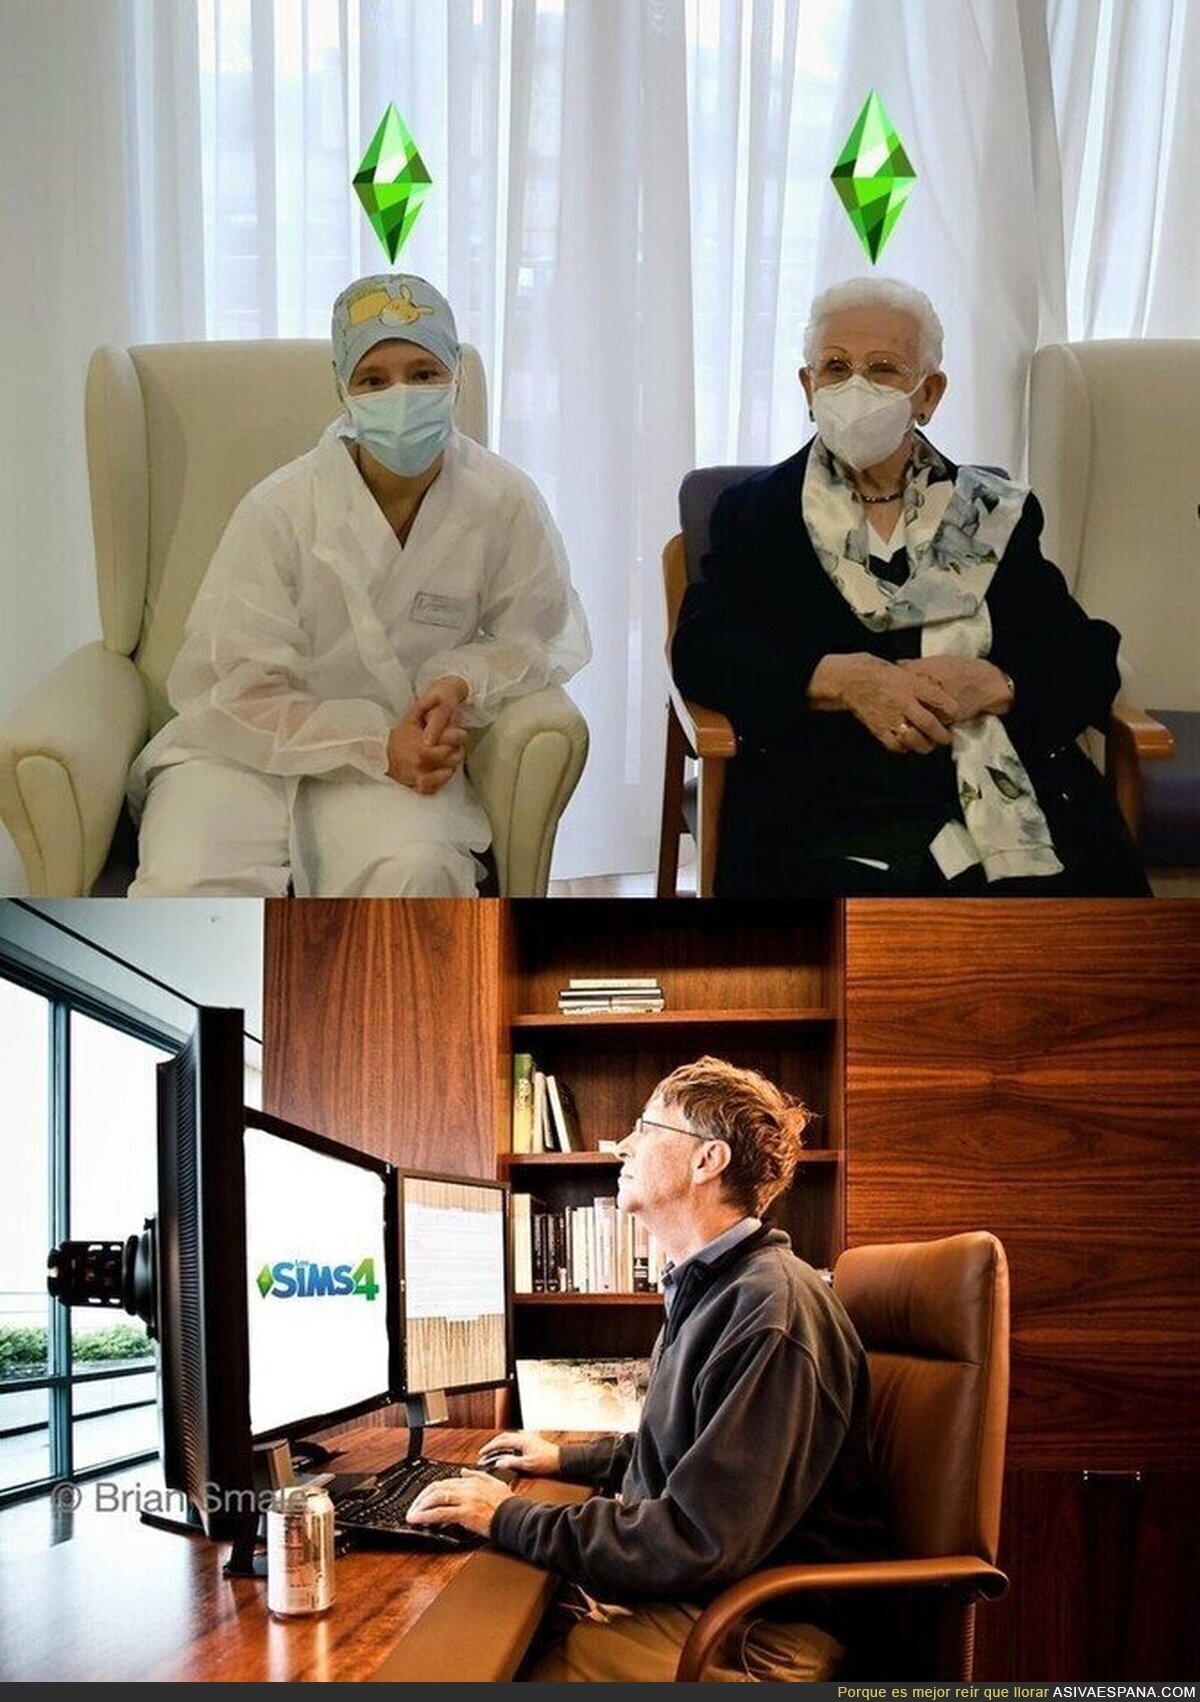 Mientras tanto, Bill Gates con la gente vacunada...